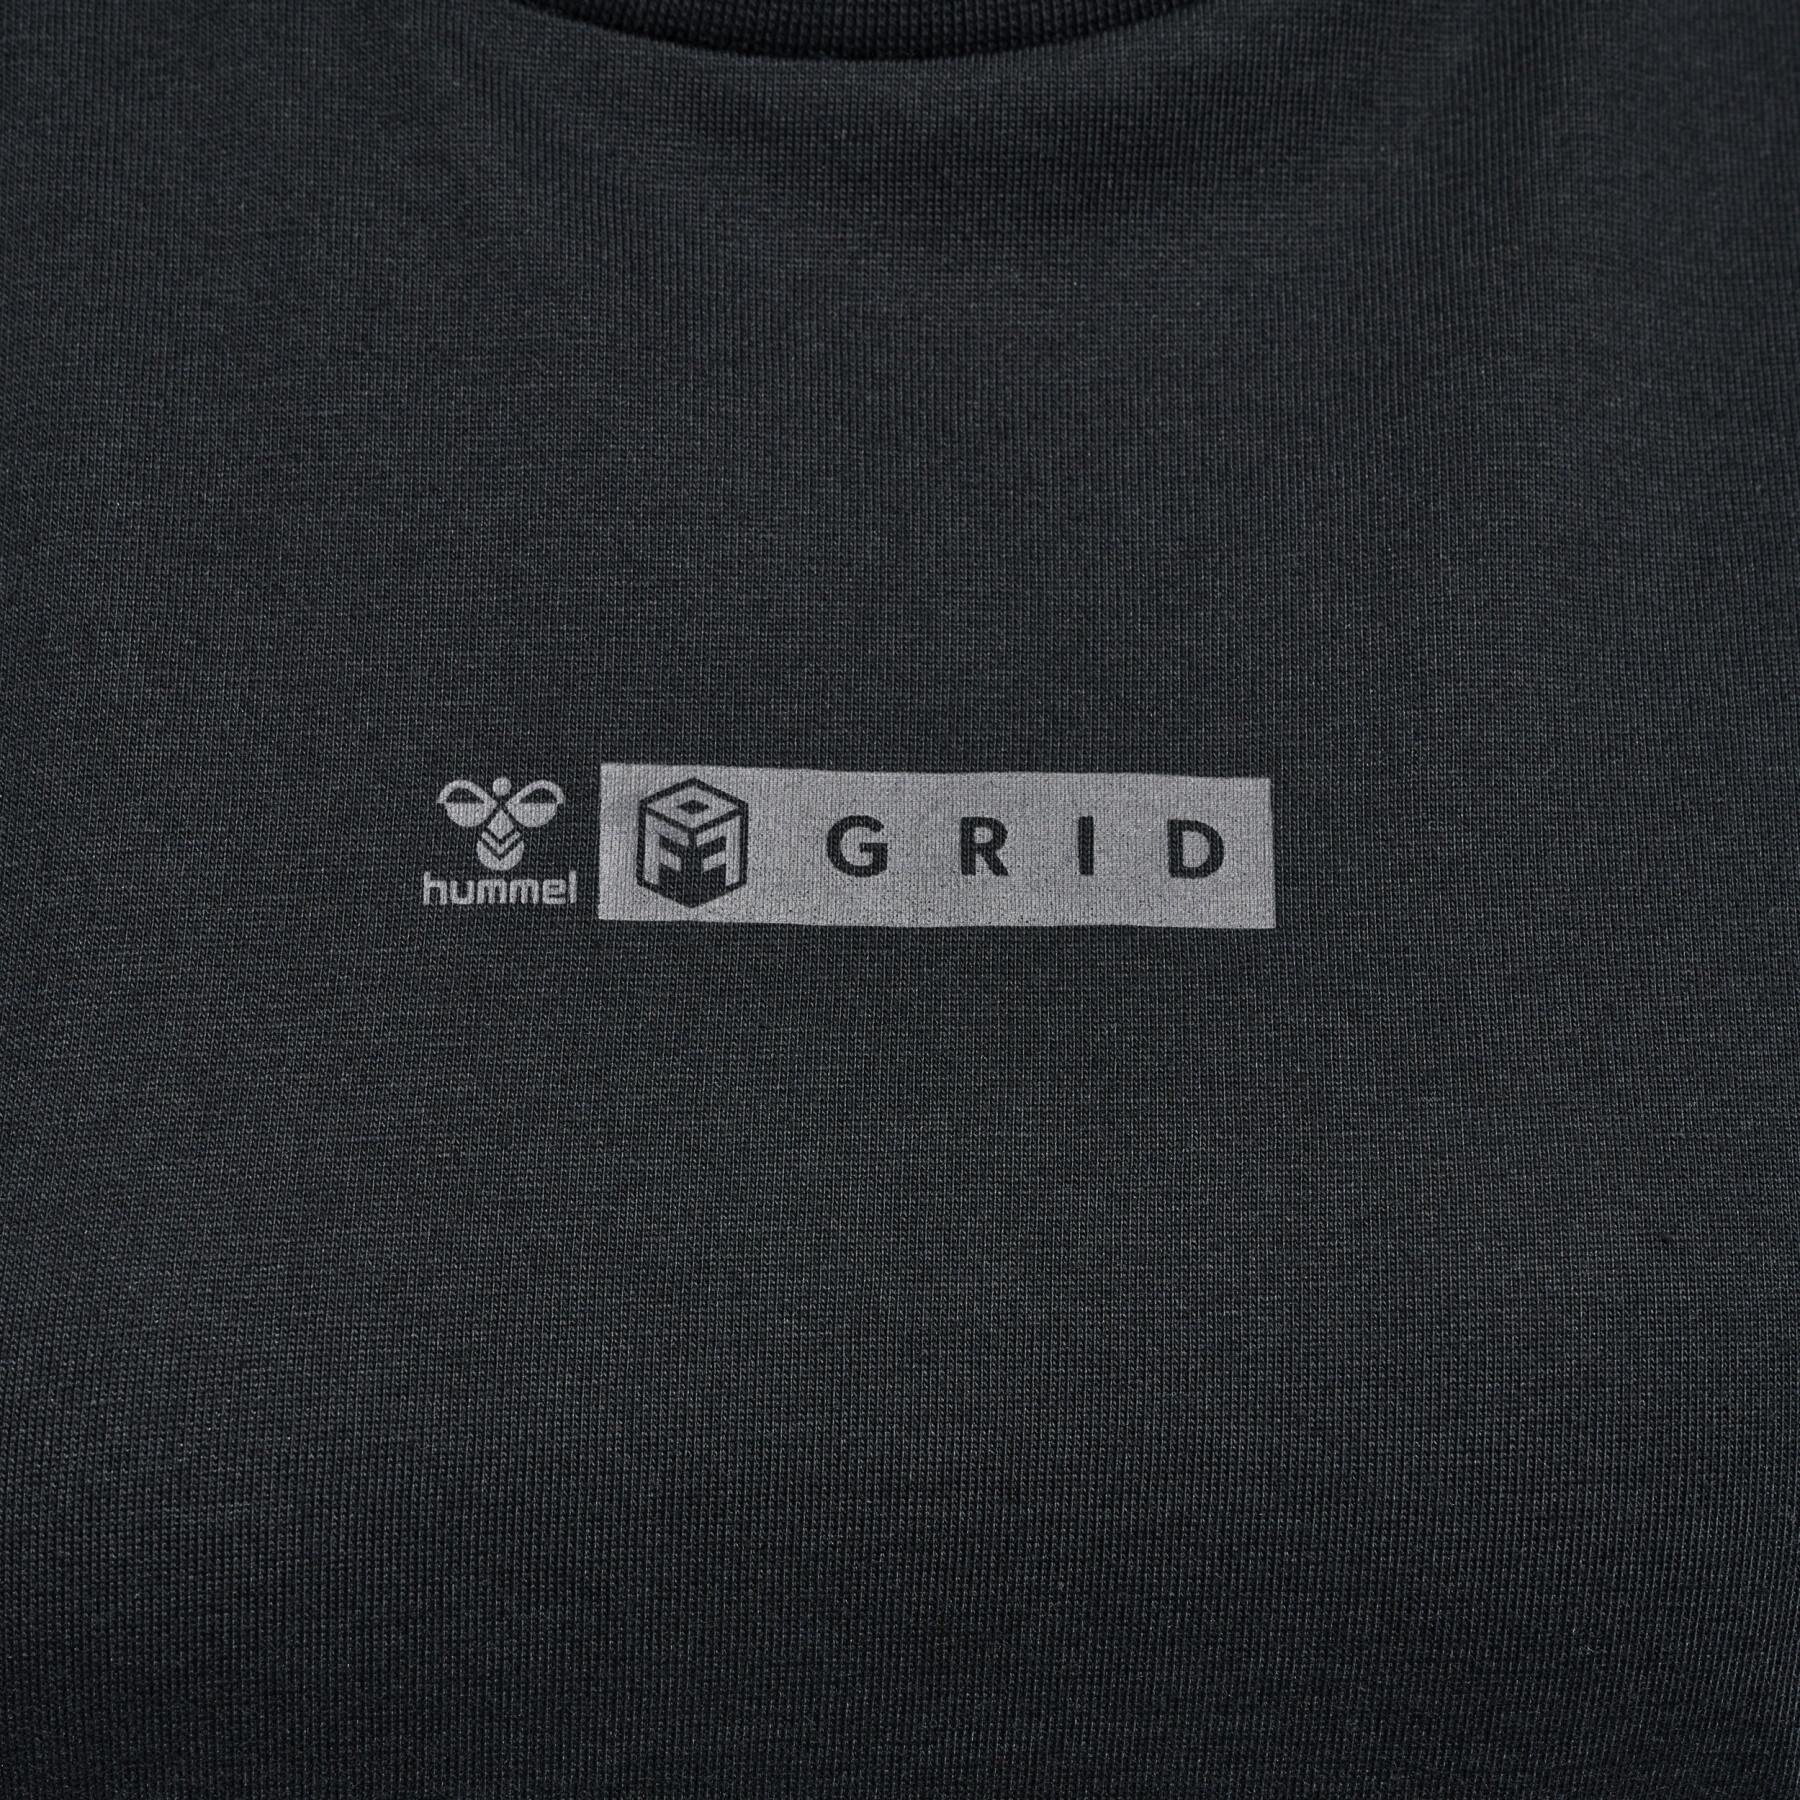 Women's T-shirt Hummel OFF - Grid